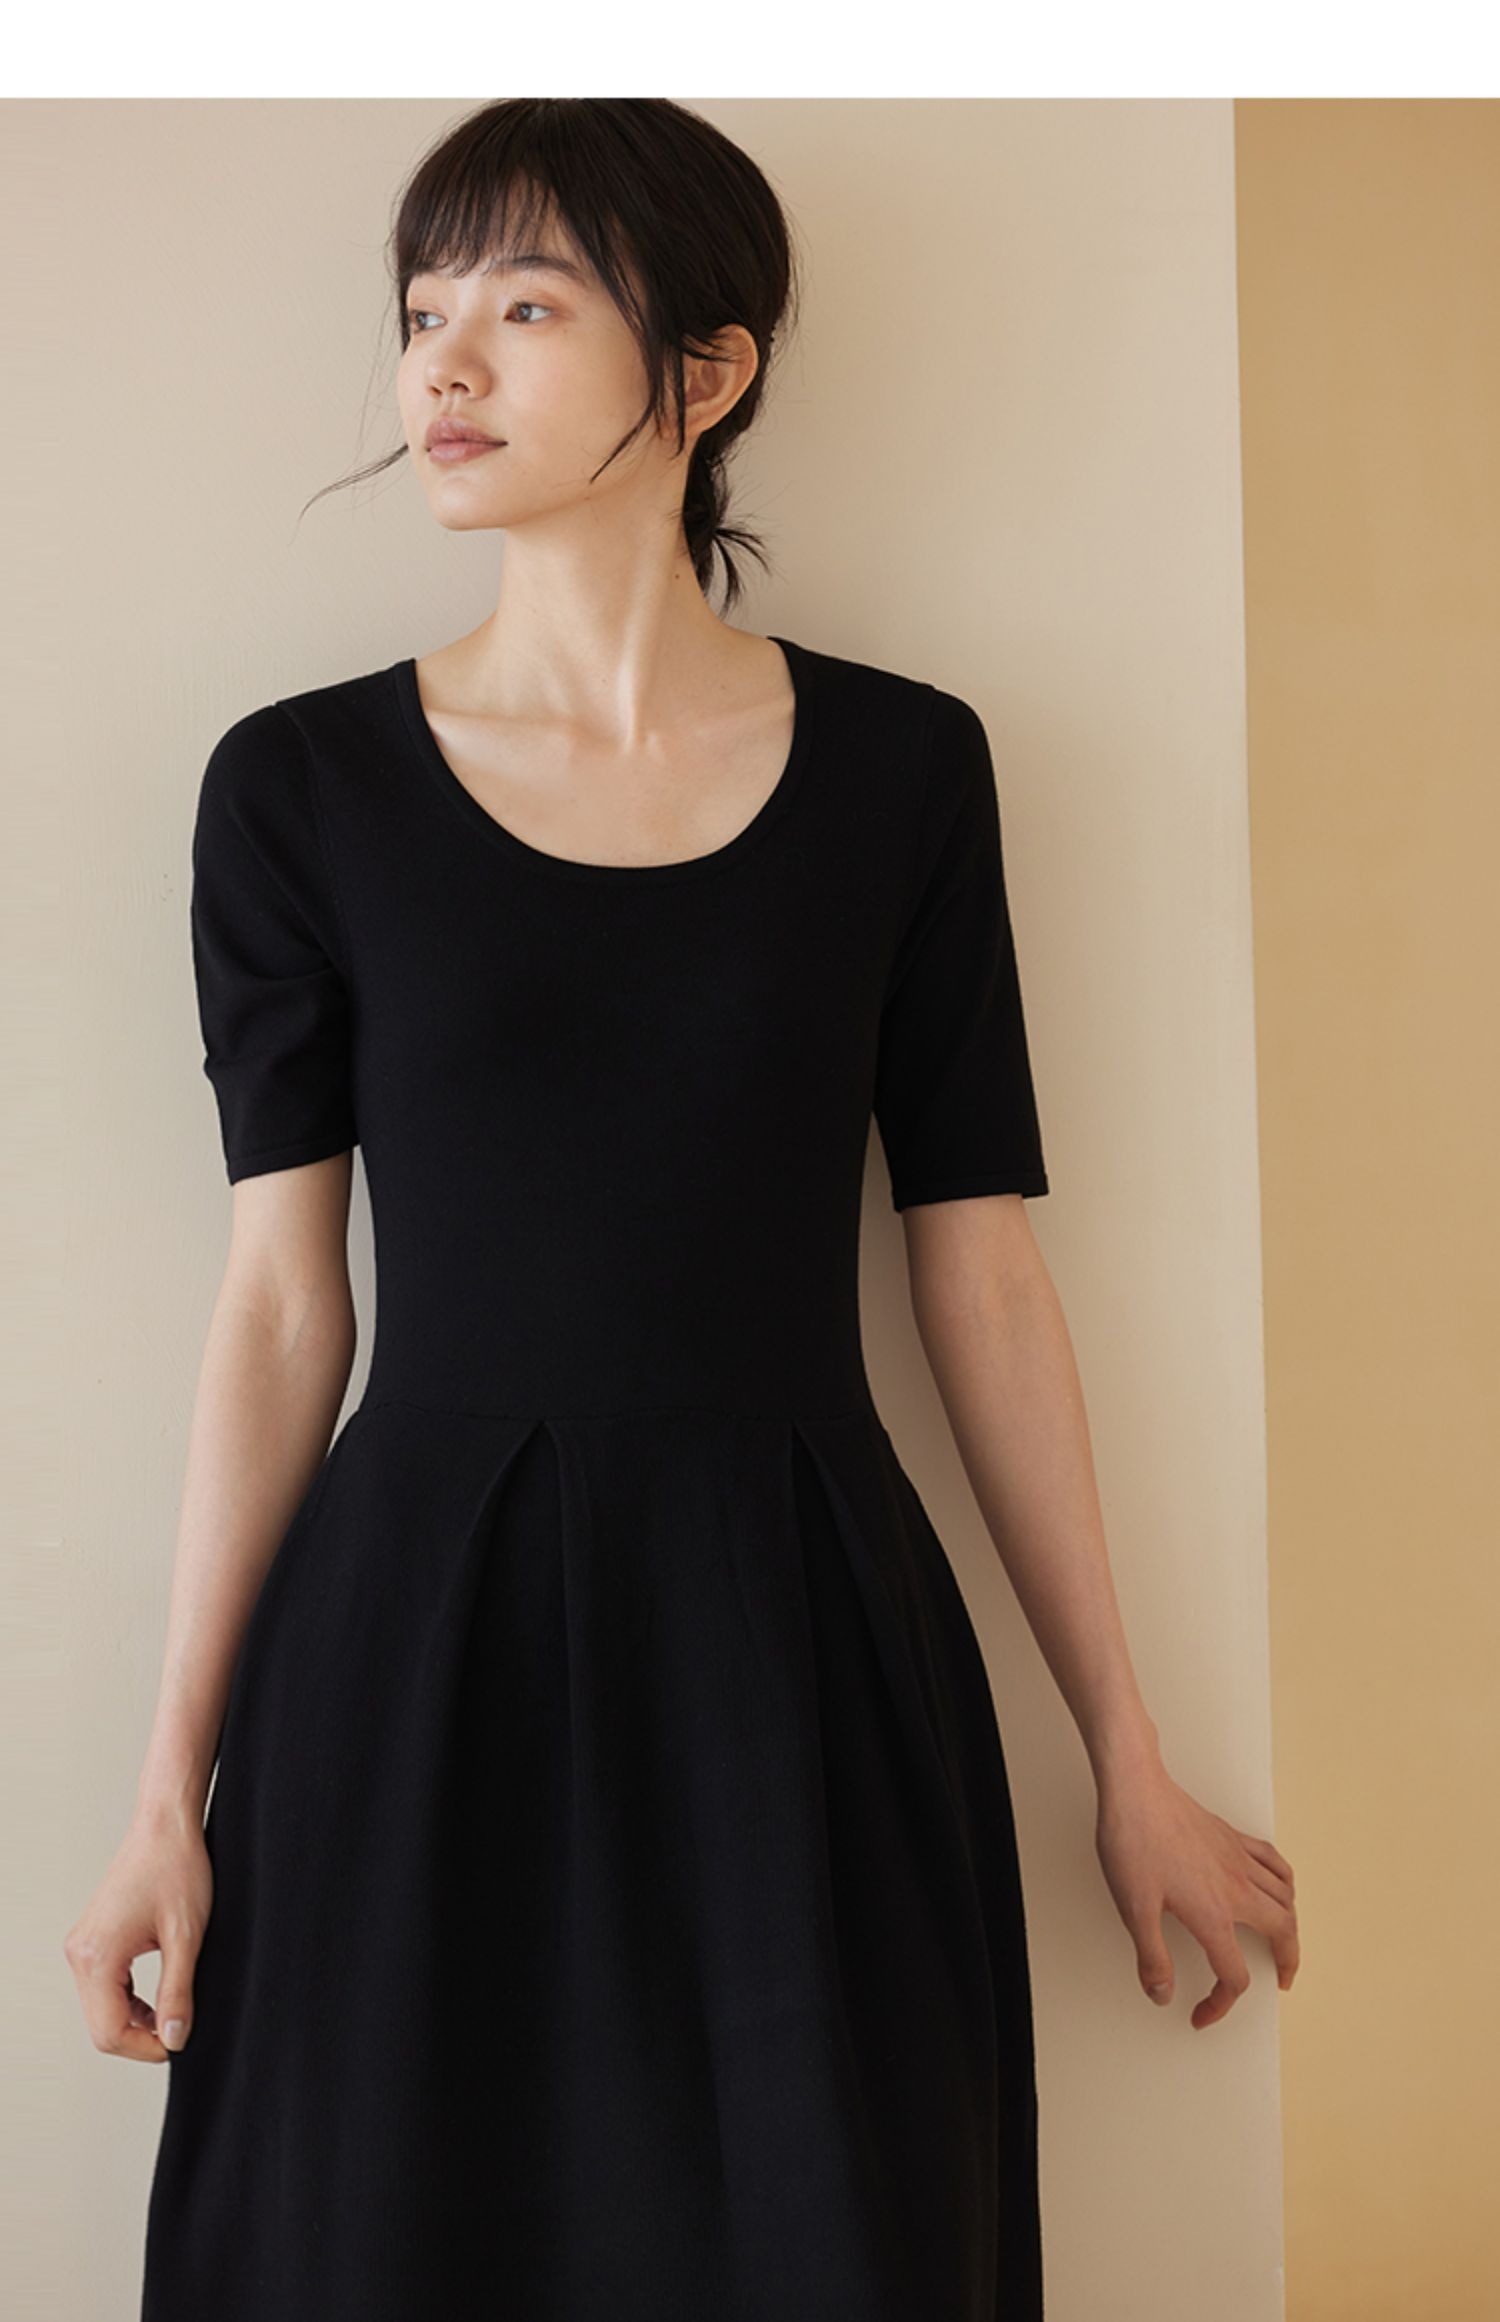 優雅氣質赫本風小黑裙收腰顯瘦高彈冰絲不悶熱連身裙洋裝